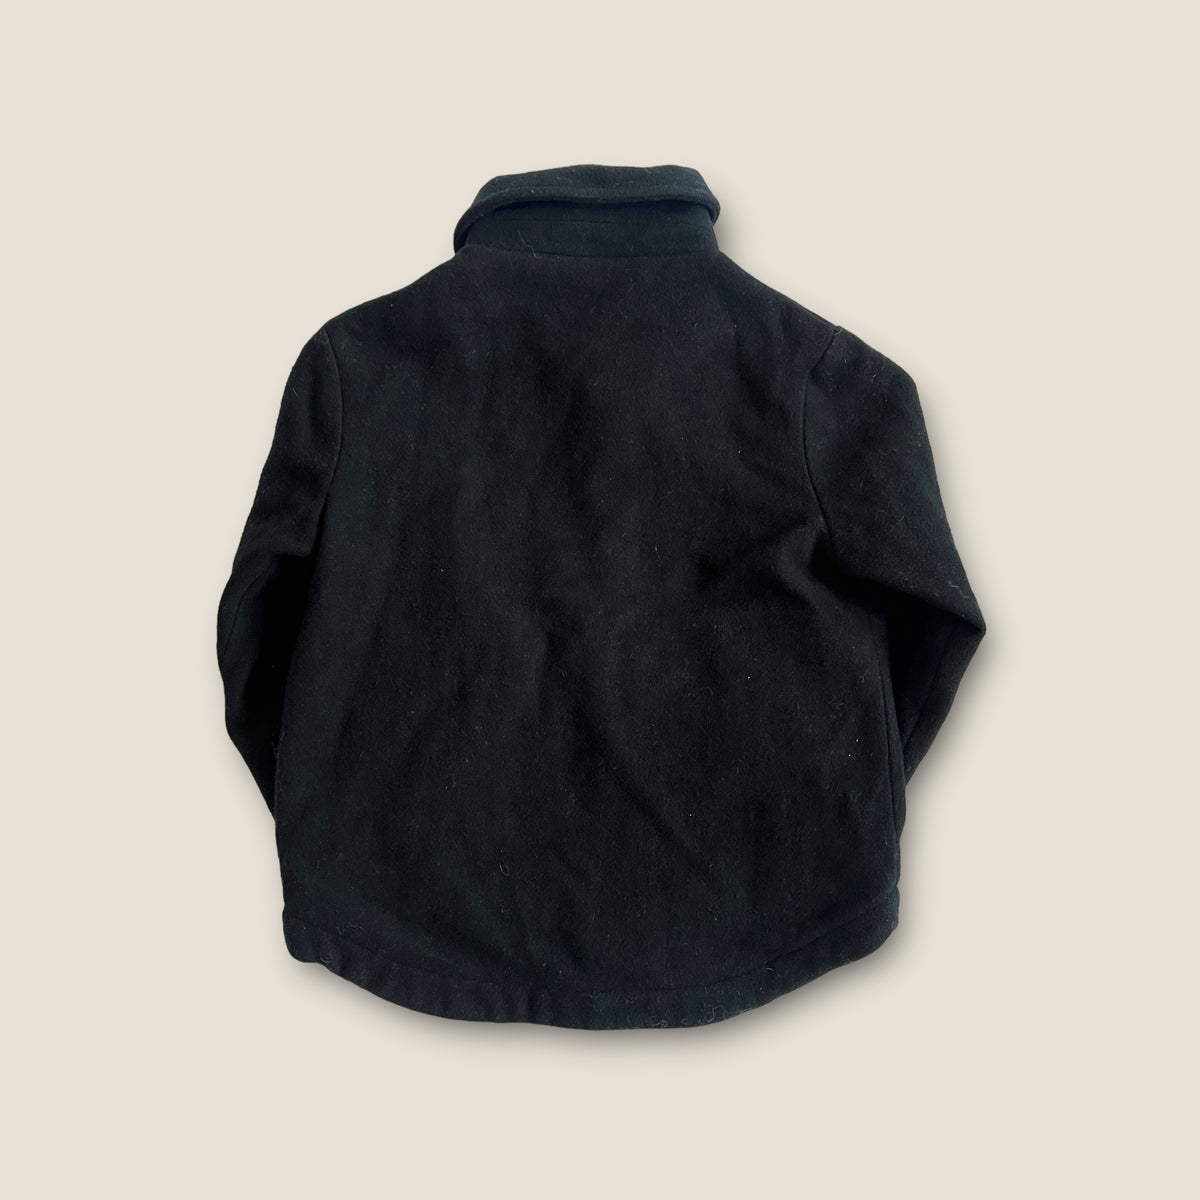 Wynken Wool Jacket size 6 years